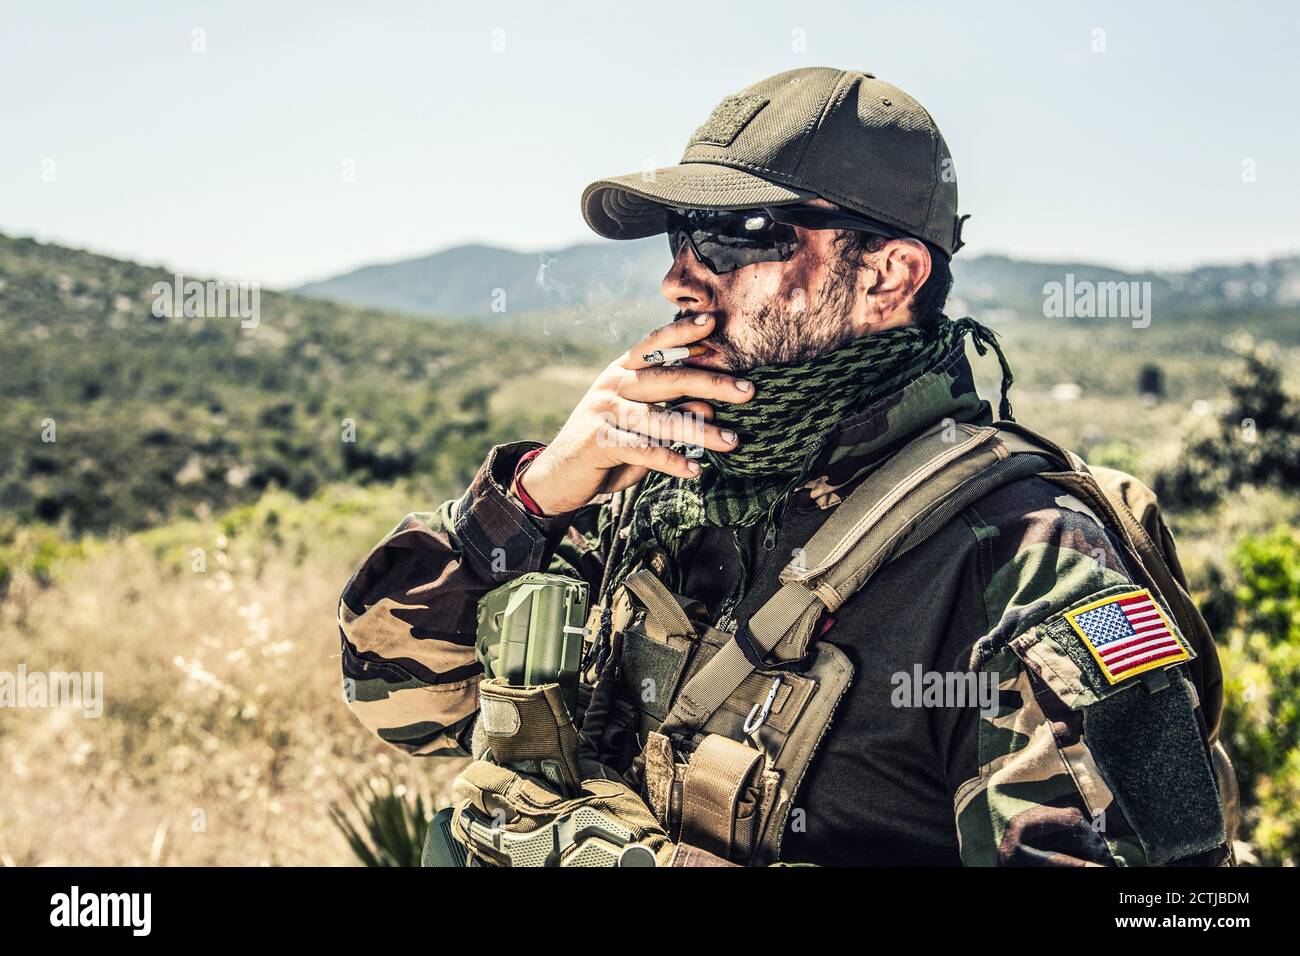 Soldat des forces spéciales de l'armée, chasse aux phoques en uniforme de  camouflage, foulard à sorbade, lunettes et casquette balistiques,  porte-plaque tactique, fumage de cigarettes, repos après le combat dans la  région